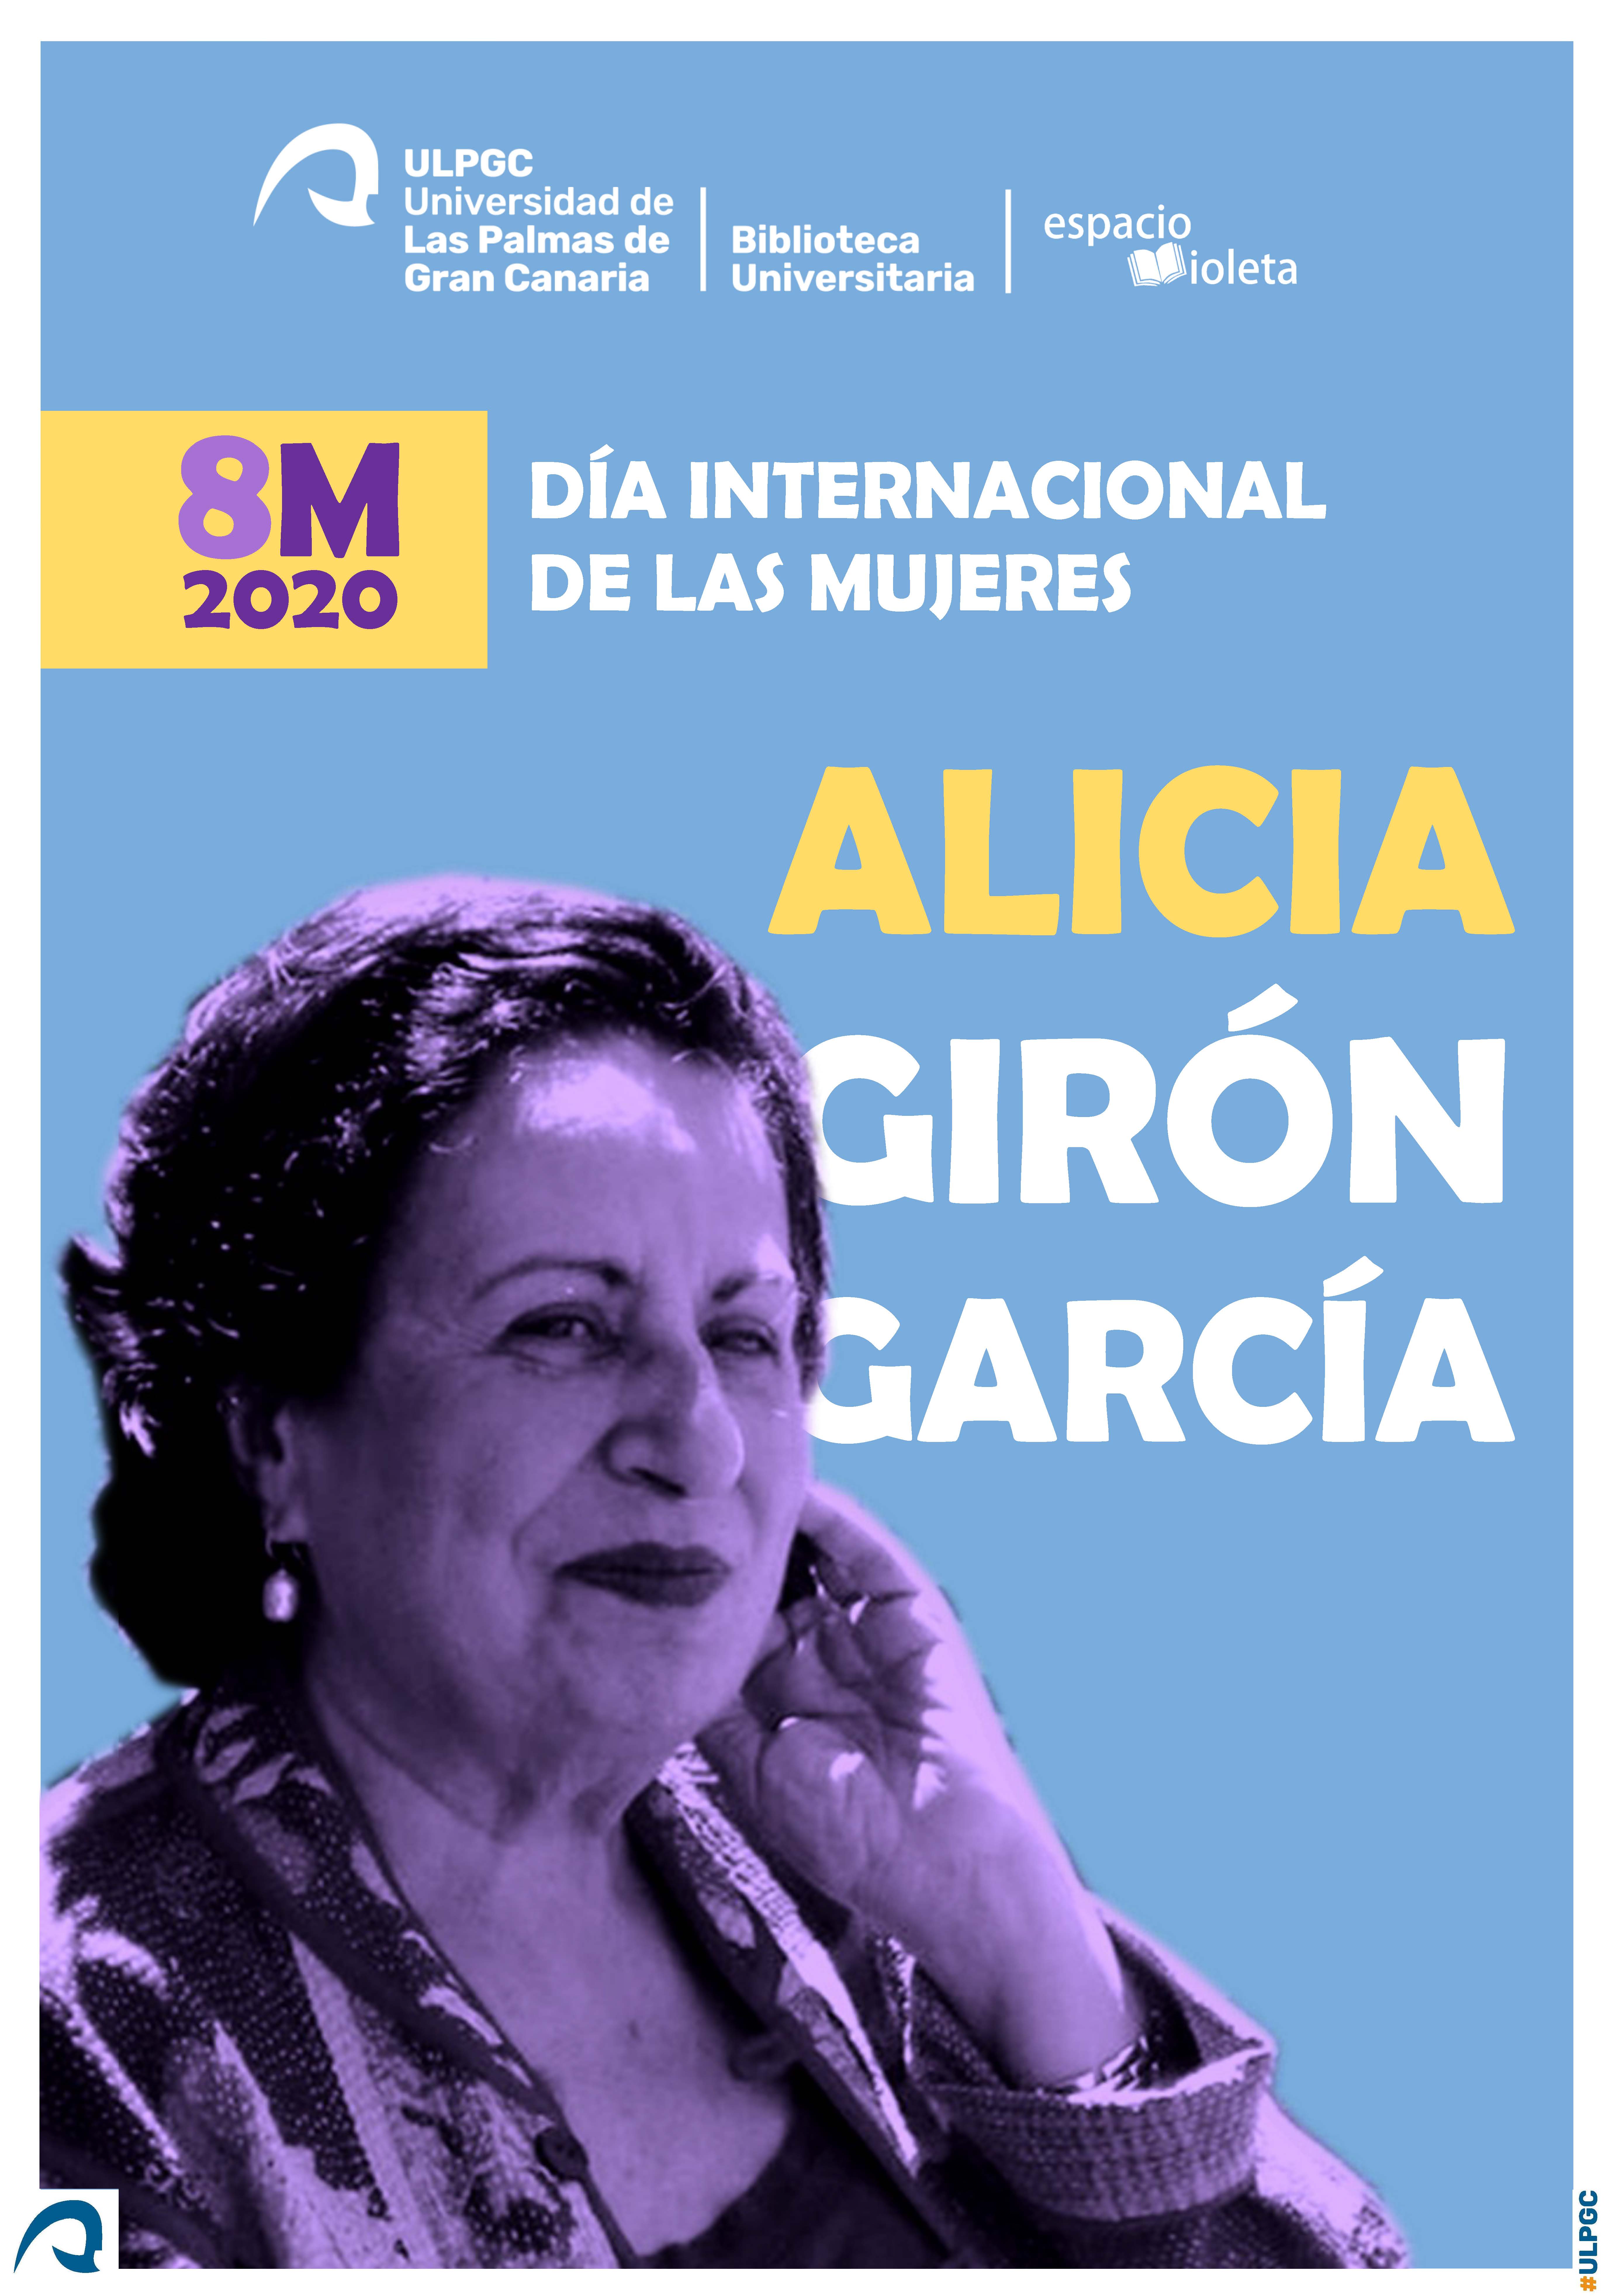 Cartel 8M 2020 con fotografía de busto de Alicia Girón García